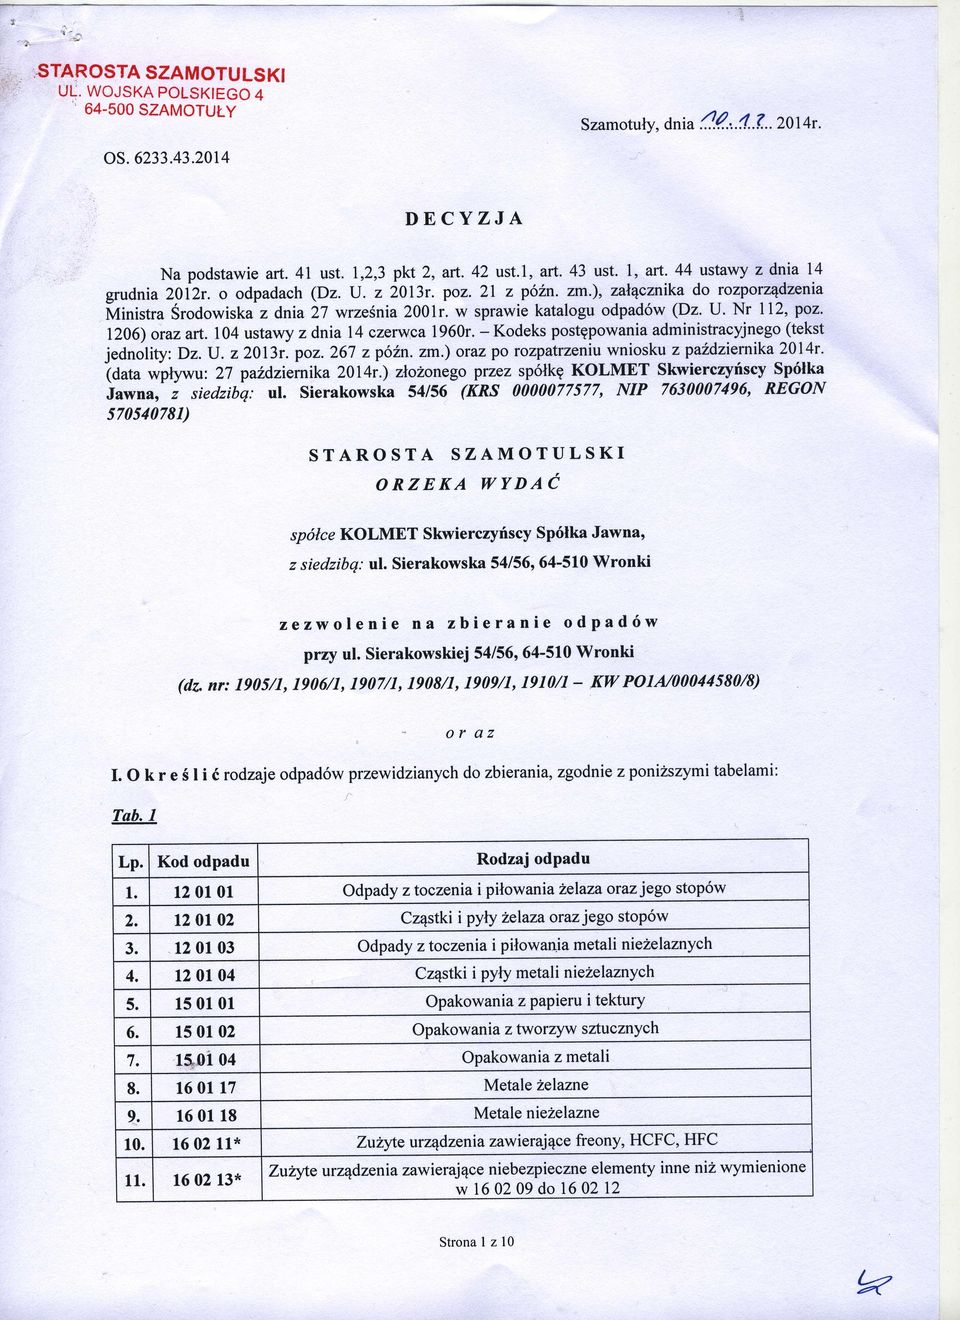 w sprawie katalogu odpad6w (Dz' U' Nr 112, poz. 1206) oraz art. 104 ustawy z dnia 14 czerwca 1960r. - Kodeks postgpowaniadministracyjnego (tekst jednolity: Dz.lJ. z 2013r. poz. 267 z p62n.